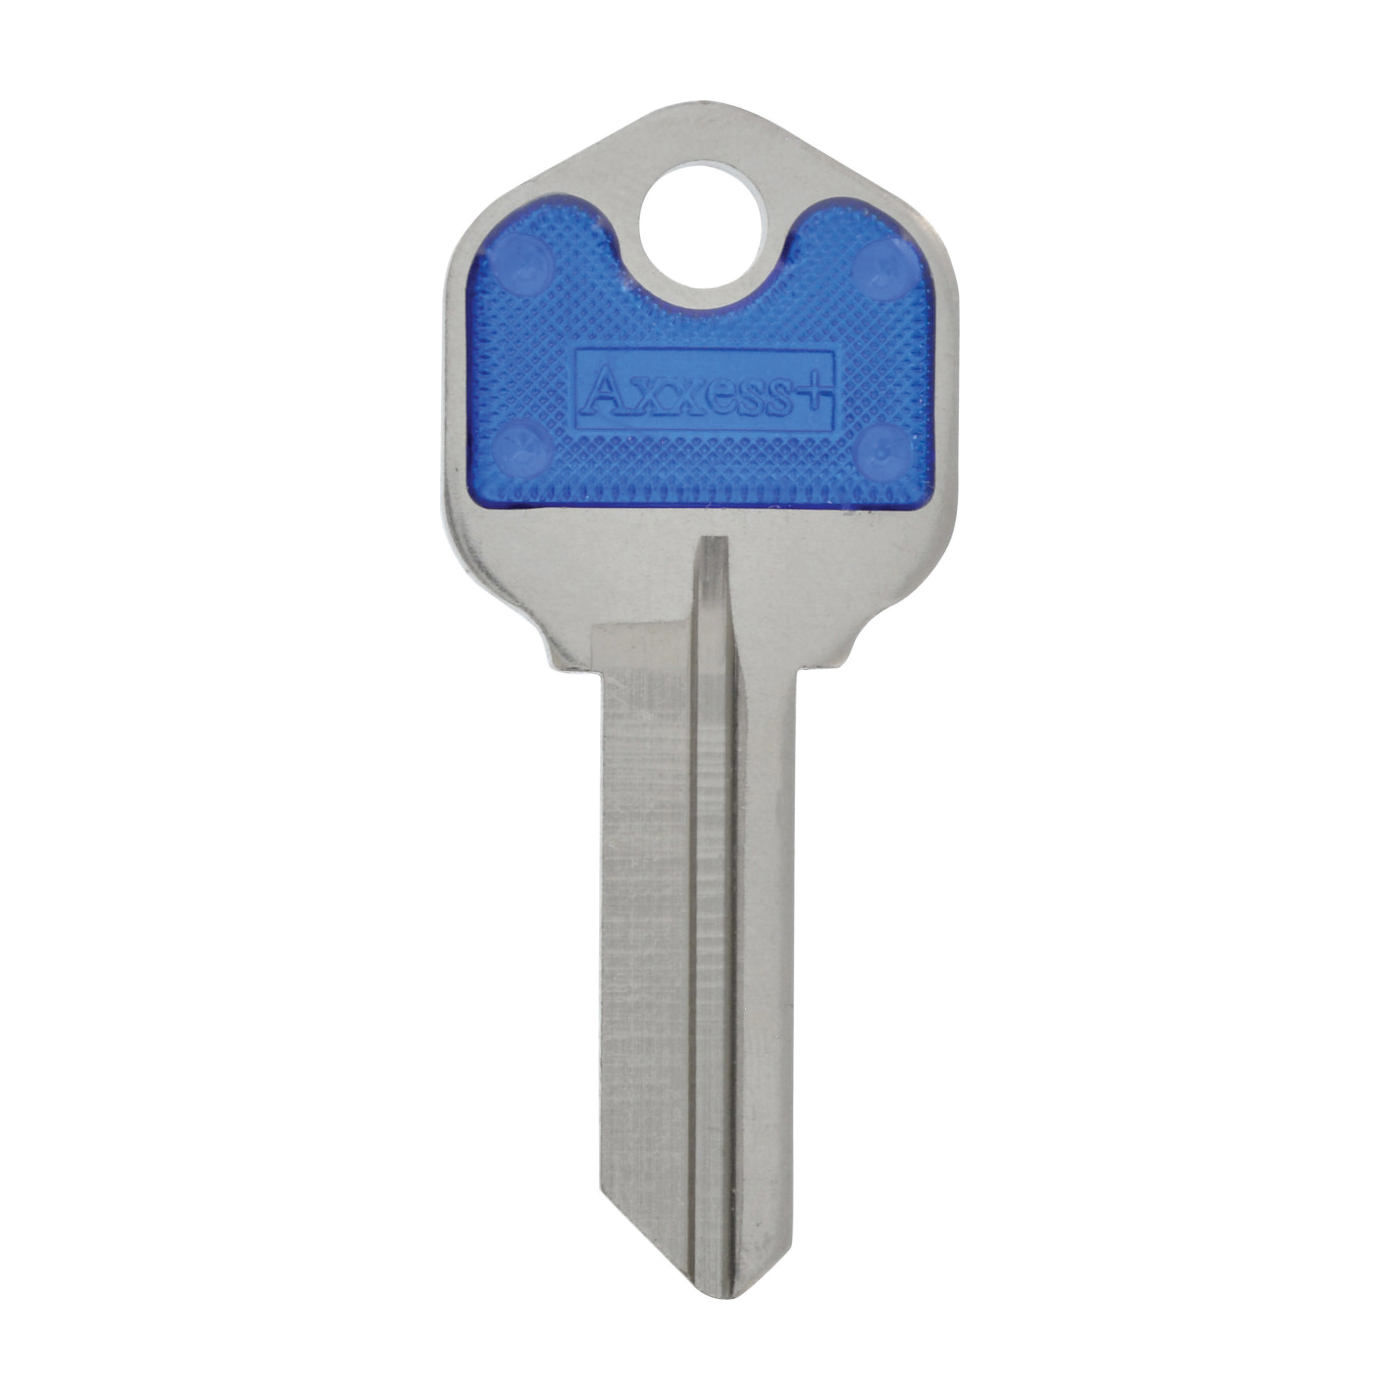 Hillman ColorPlus Series 88900 Key Blank, Brass, For: Kwikset Locks